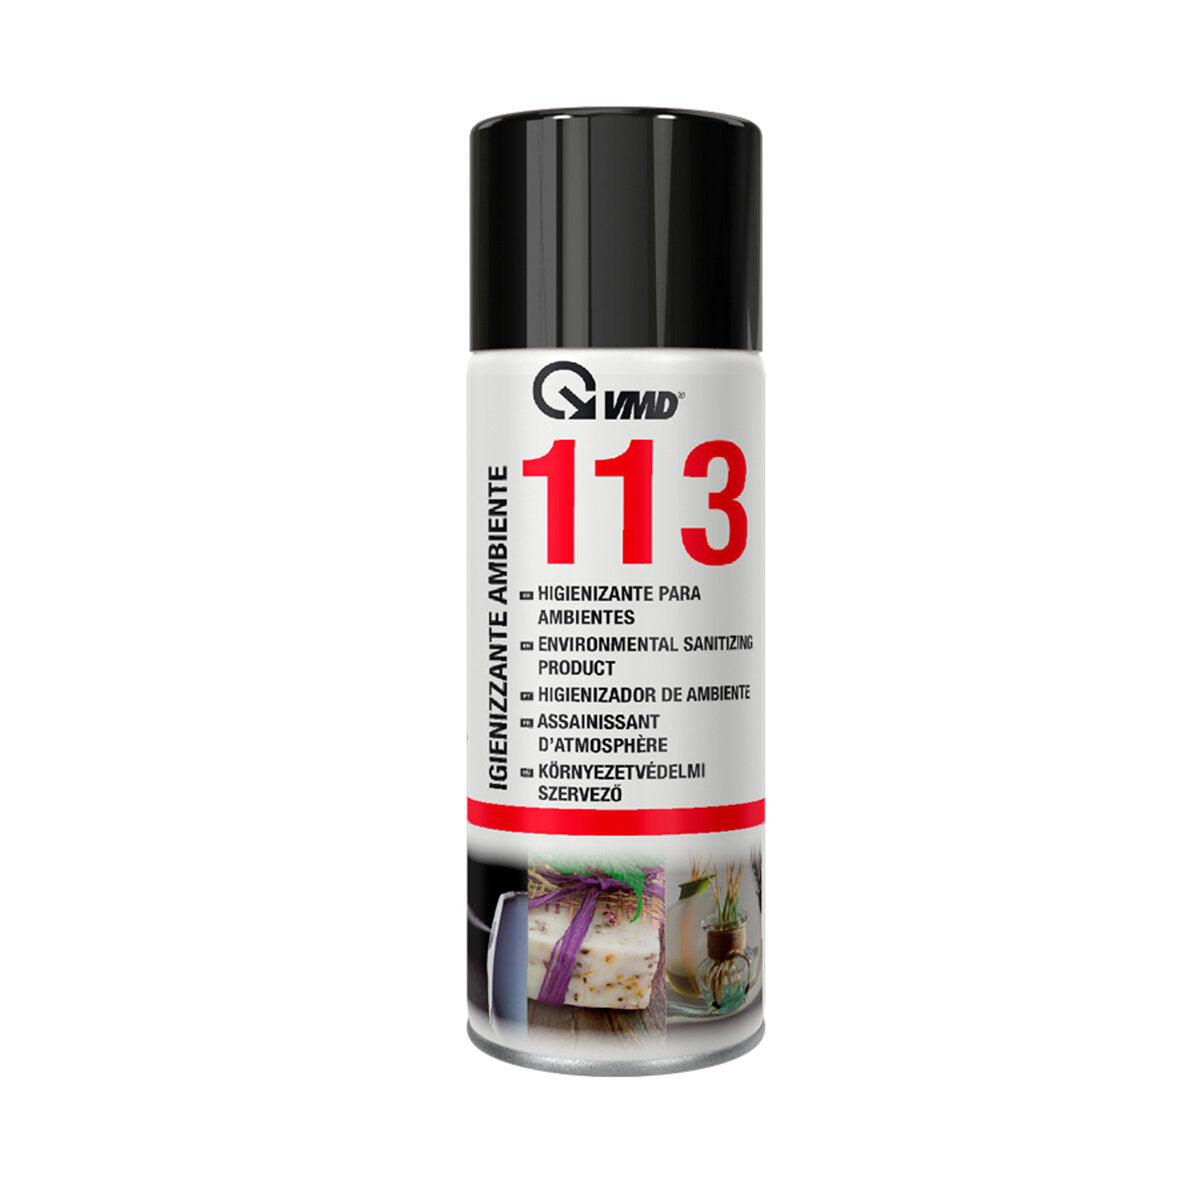 VMD 113 Desinfektionsspray für Umgebungen und Fahrzeuge